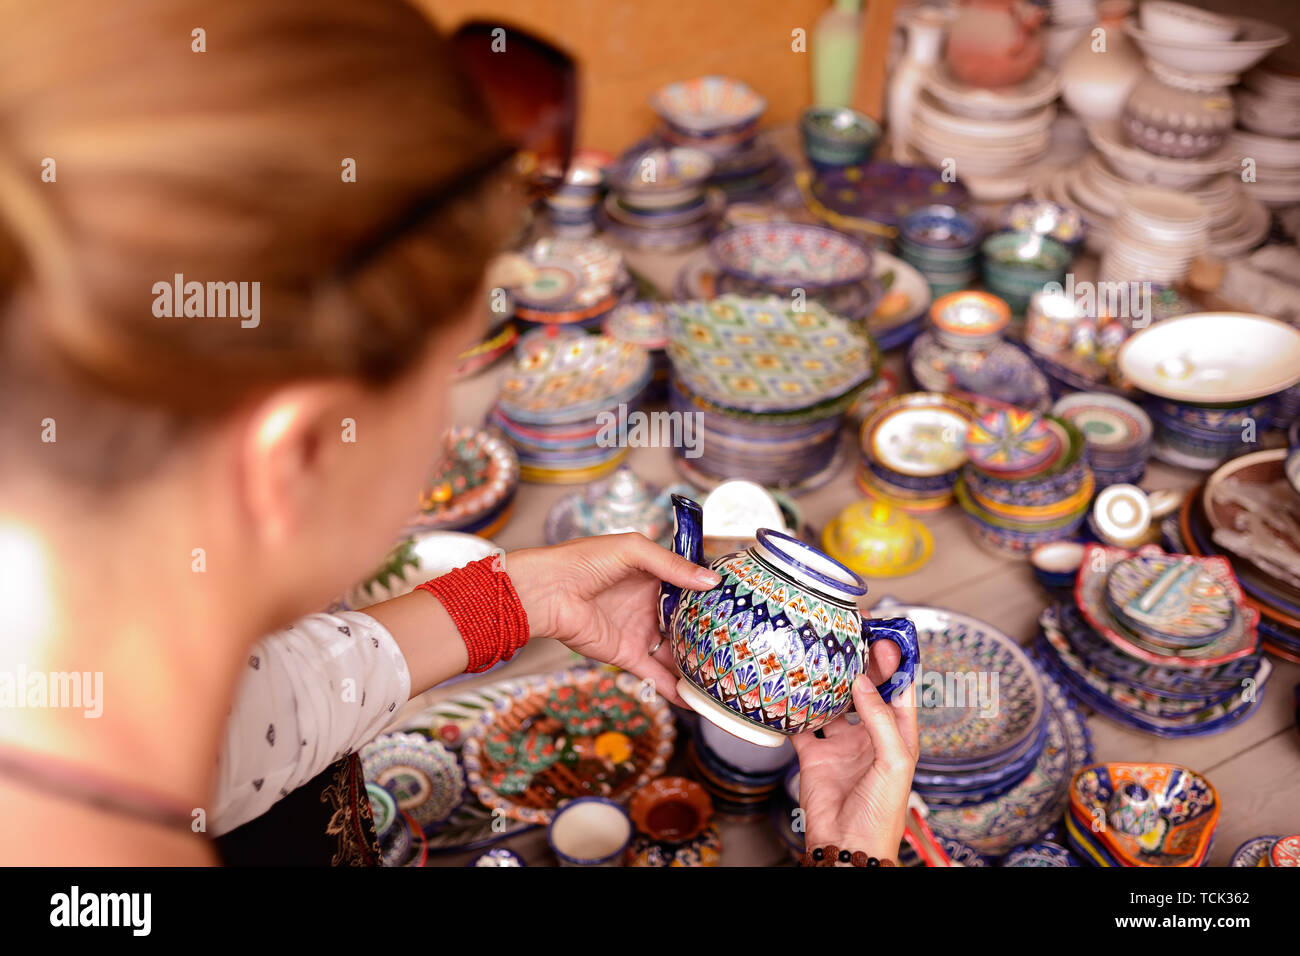 Regarder la main de tourisme la poterie céramique colorée avec cruche et tasses à l'étal de vente en Ouzbékistan, Rishton Banque D'Images